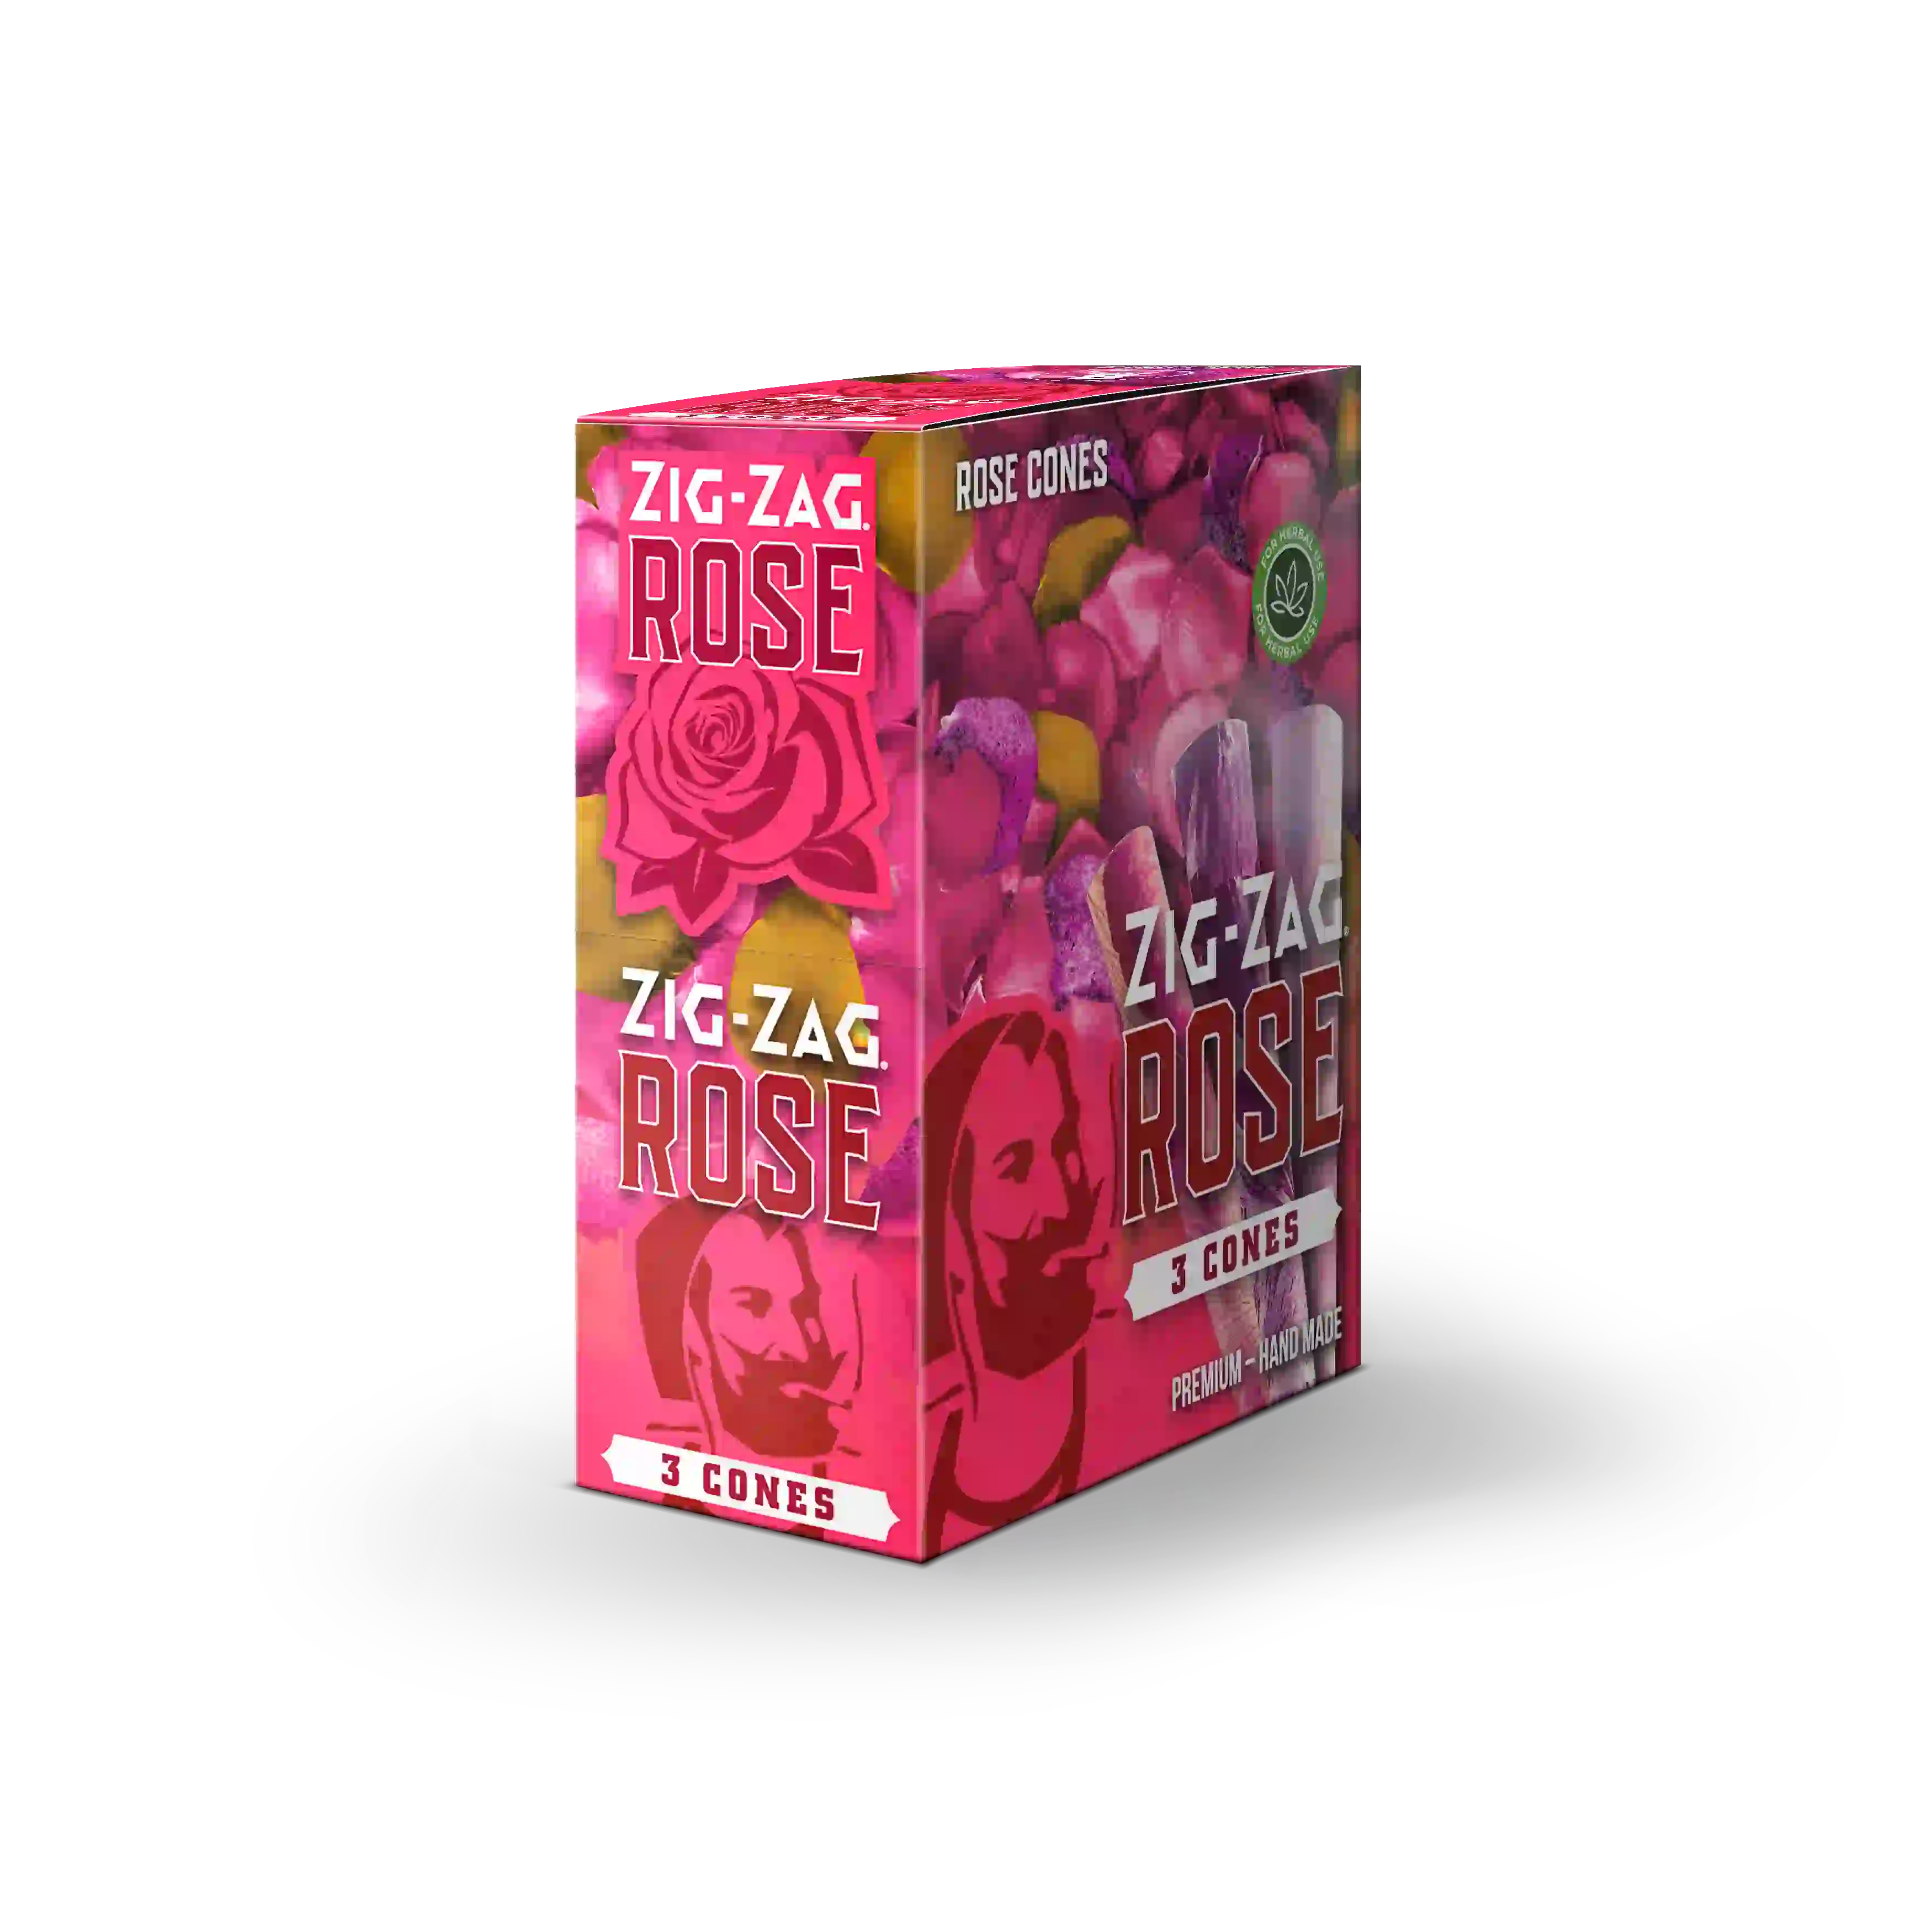 Zig Zag - Rose Premium Handmade - Cones (8packs x 3cones) - MK Distro